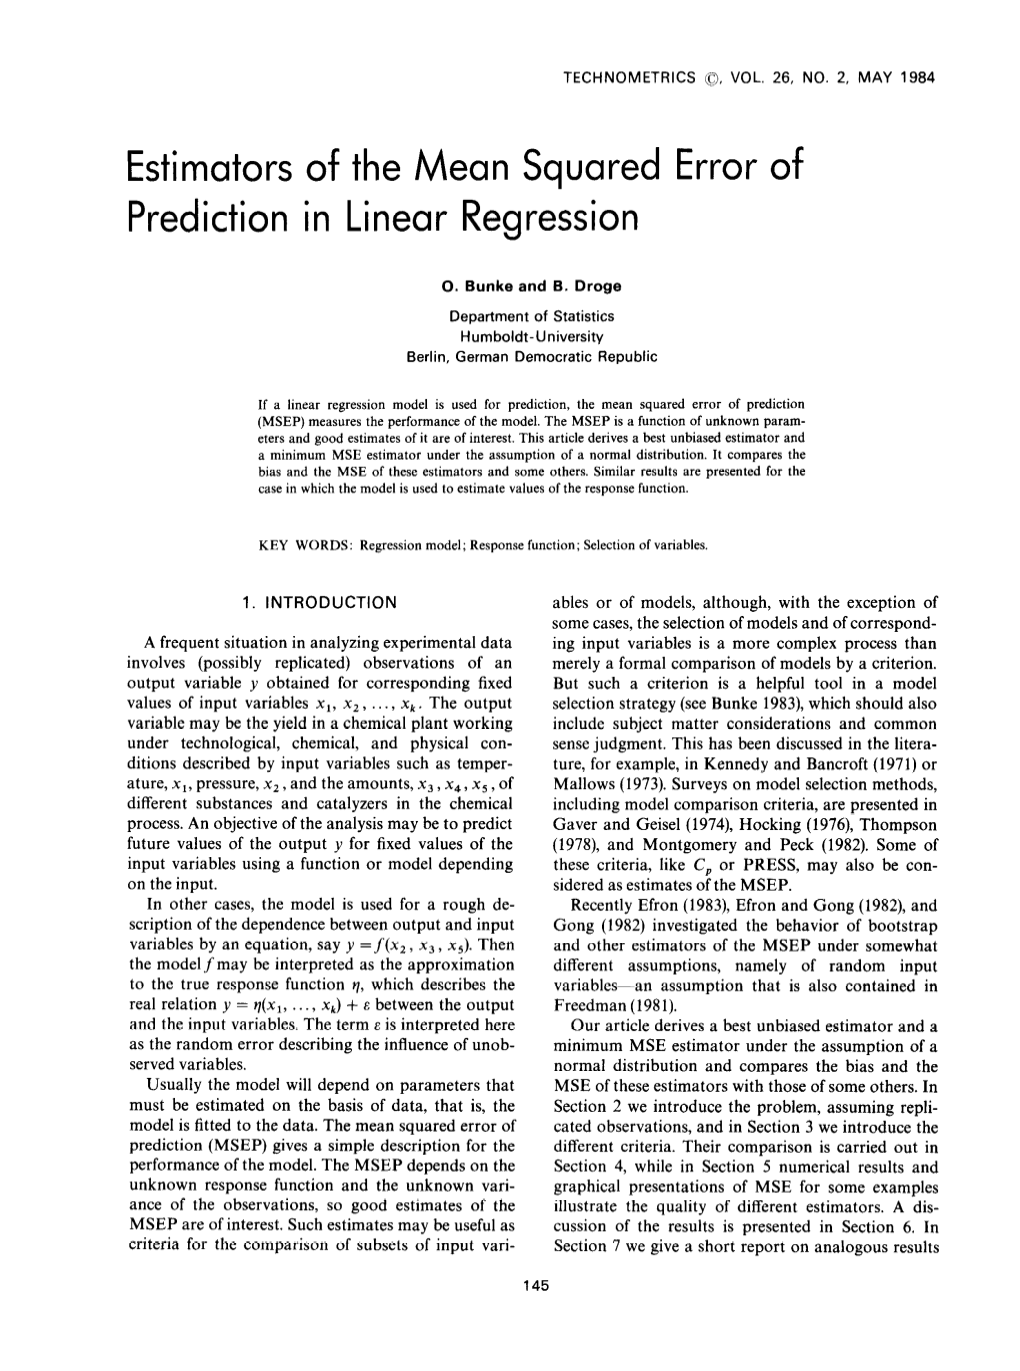 Estimators of the Mean Squared Error of Prediction in Linear Regression